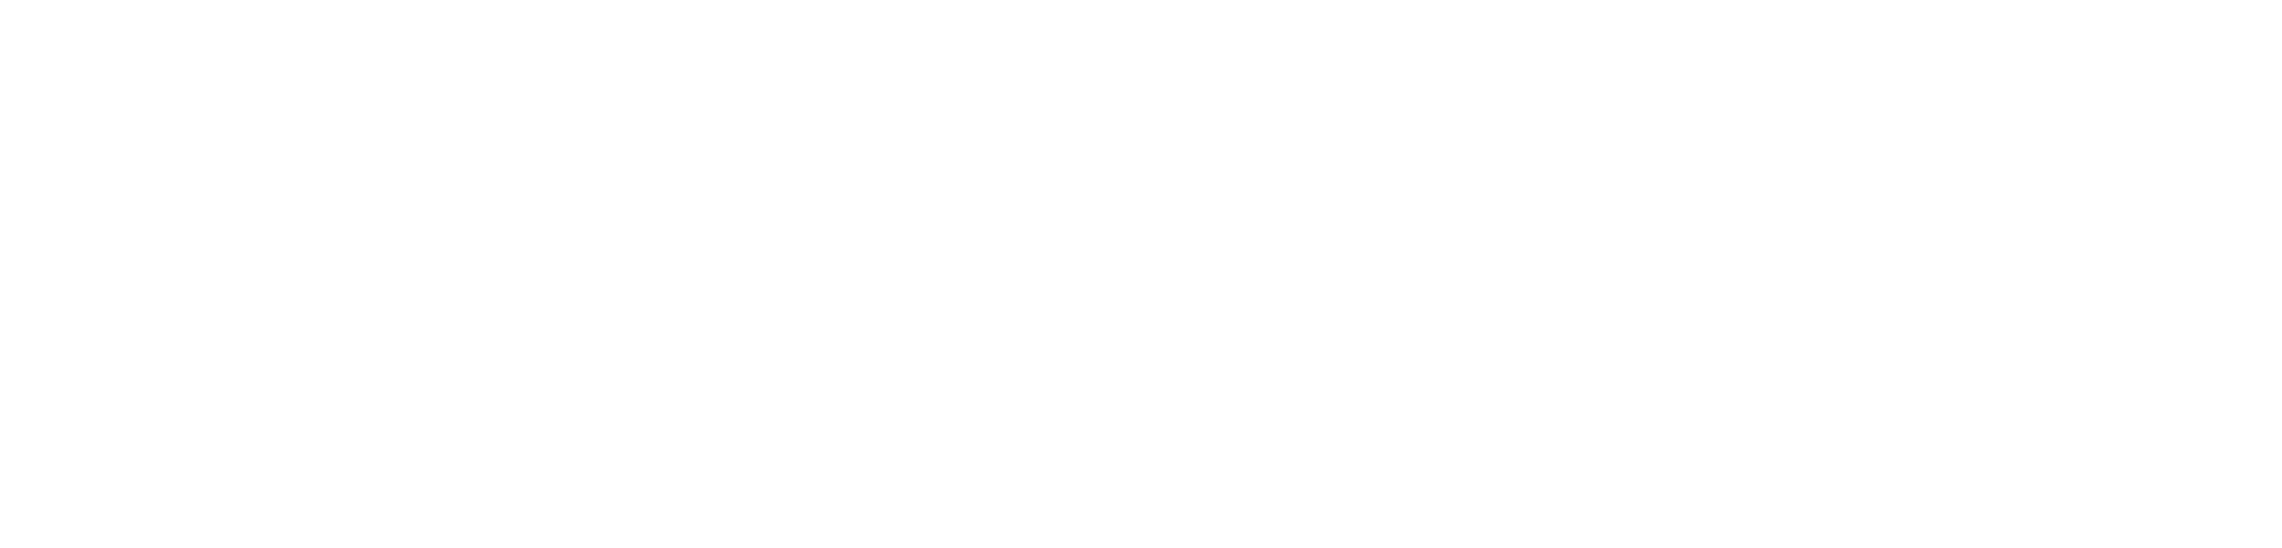 decision-resources-white-logo